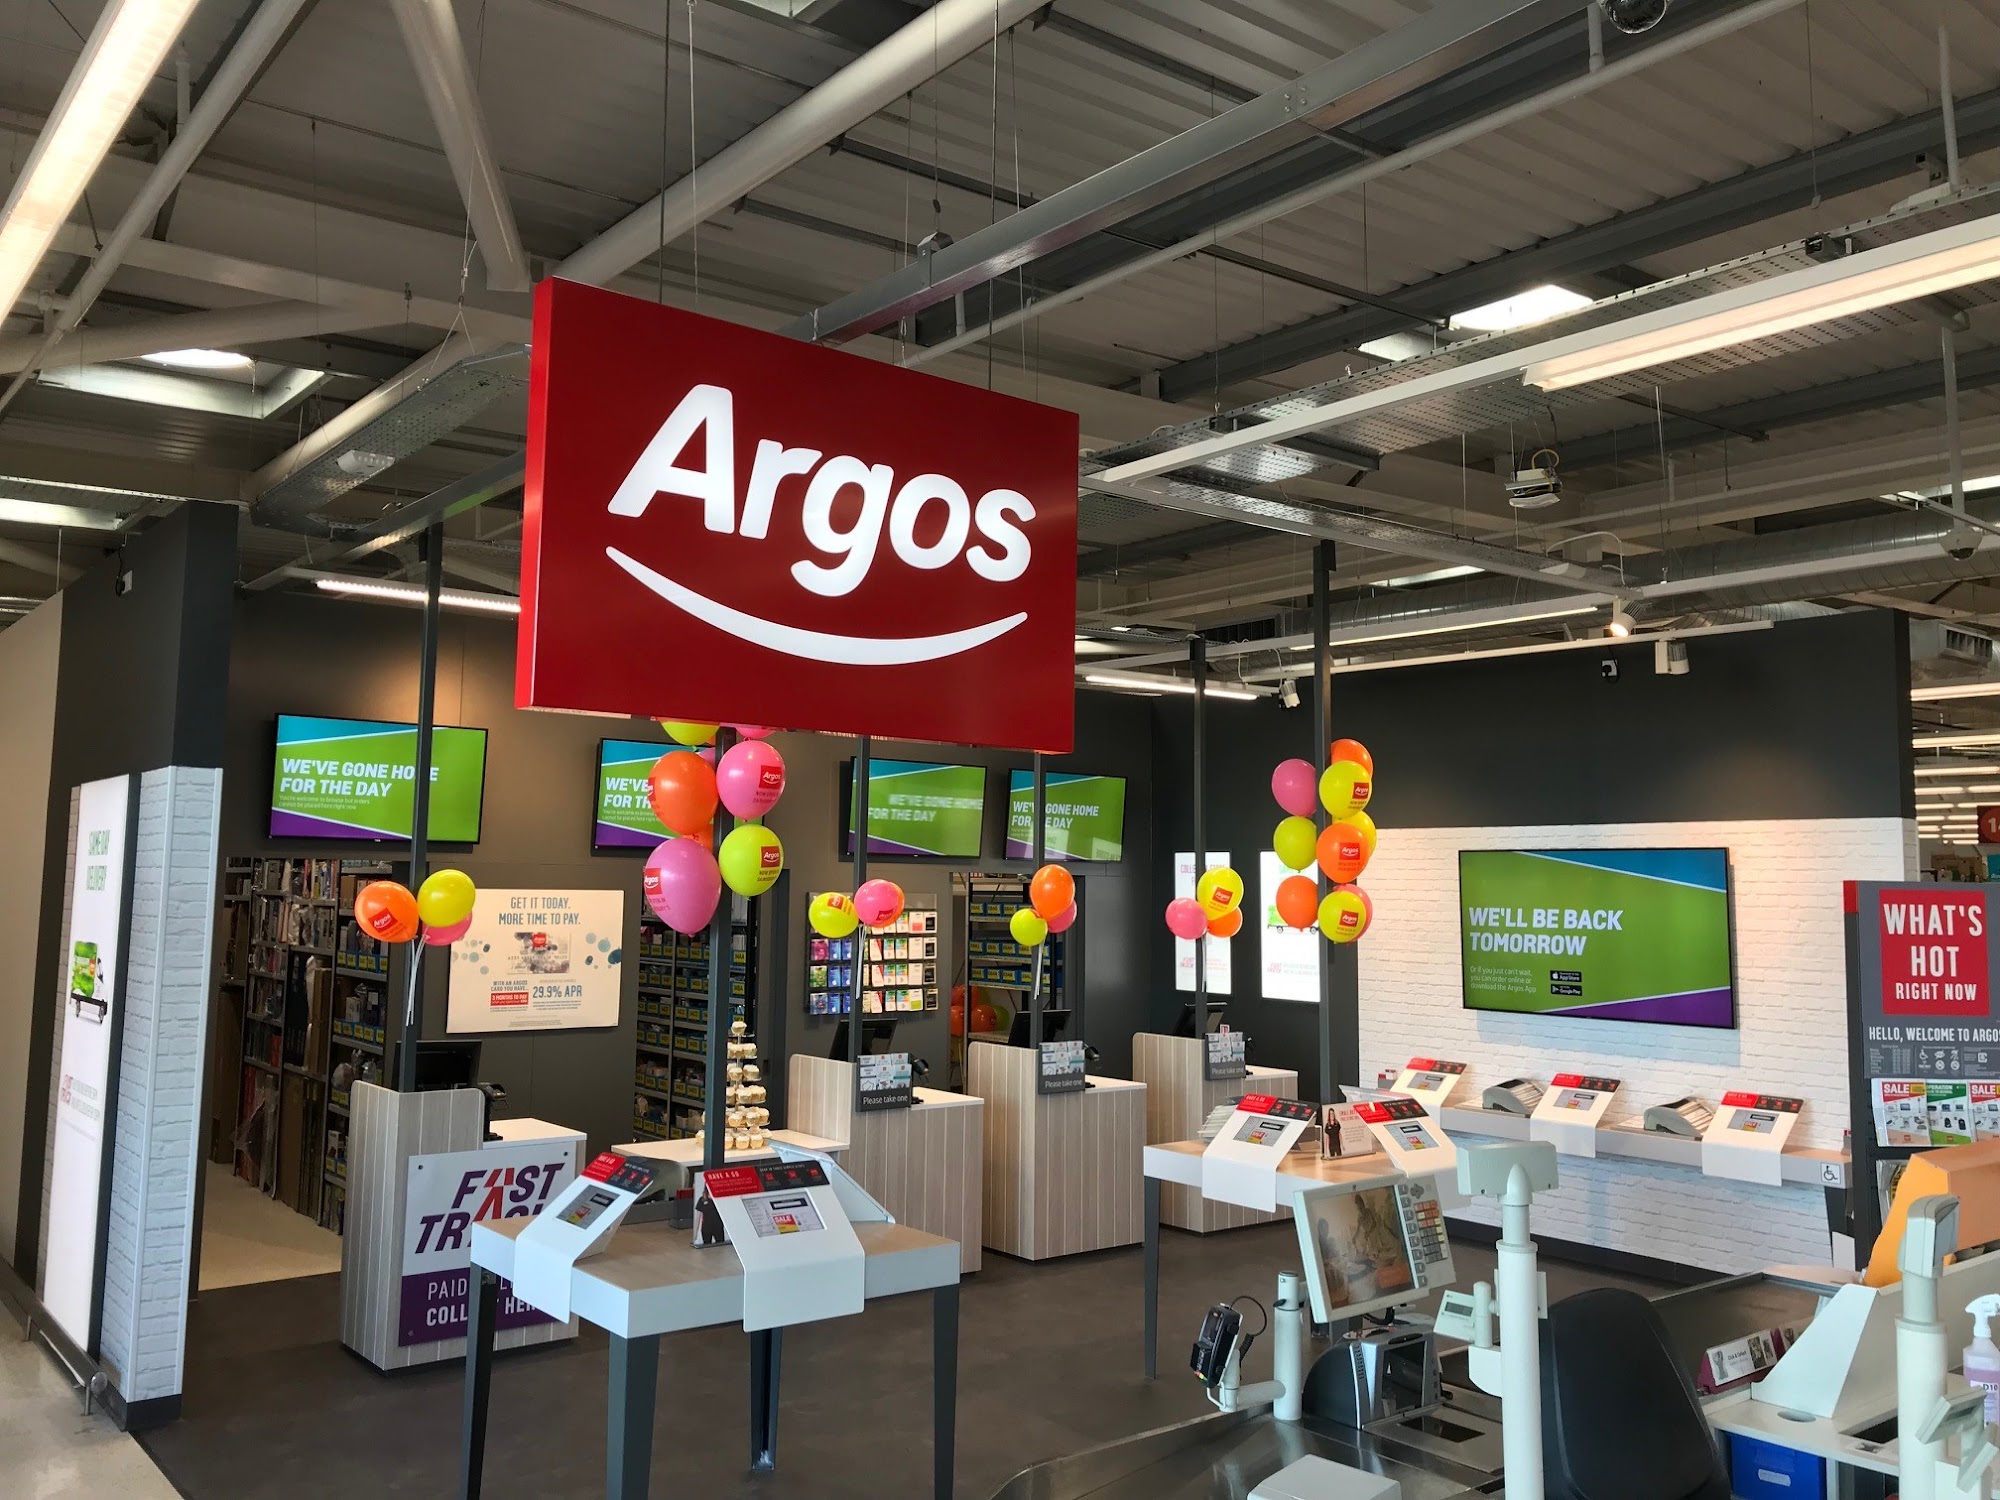 Argos Strathaven (Inside Sainsbury's)